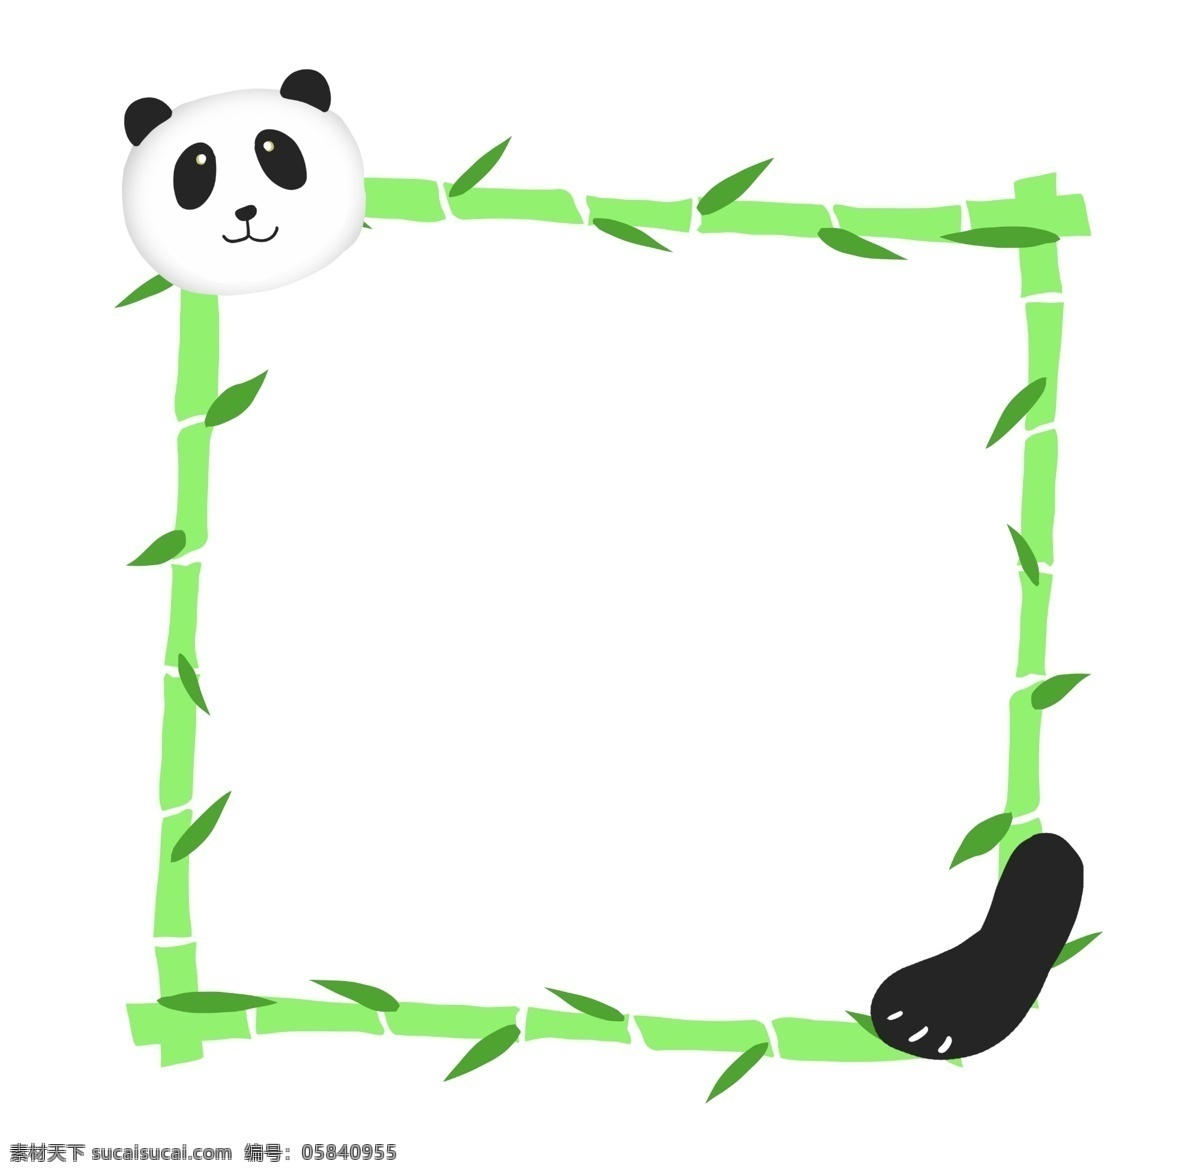 熊猫 竹子 边框 插图 熊猫边框 大熊猫 可爱大熊猫 动物边框 创意竹子边框 竹子边框 绿色竹子